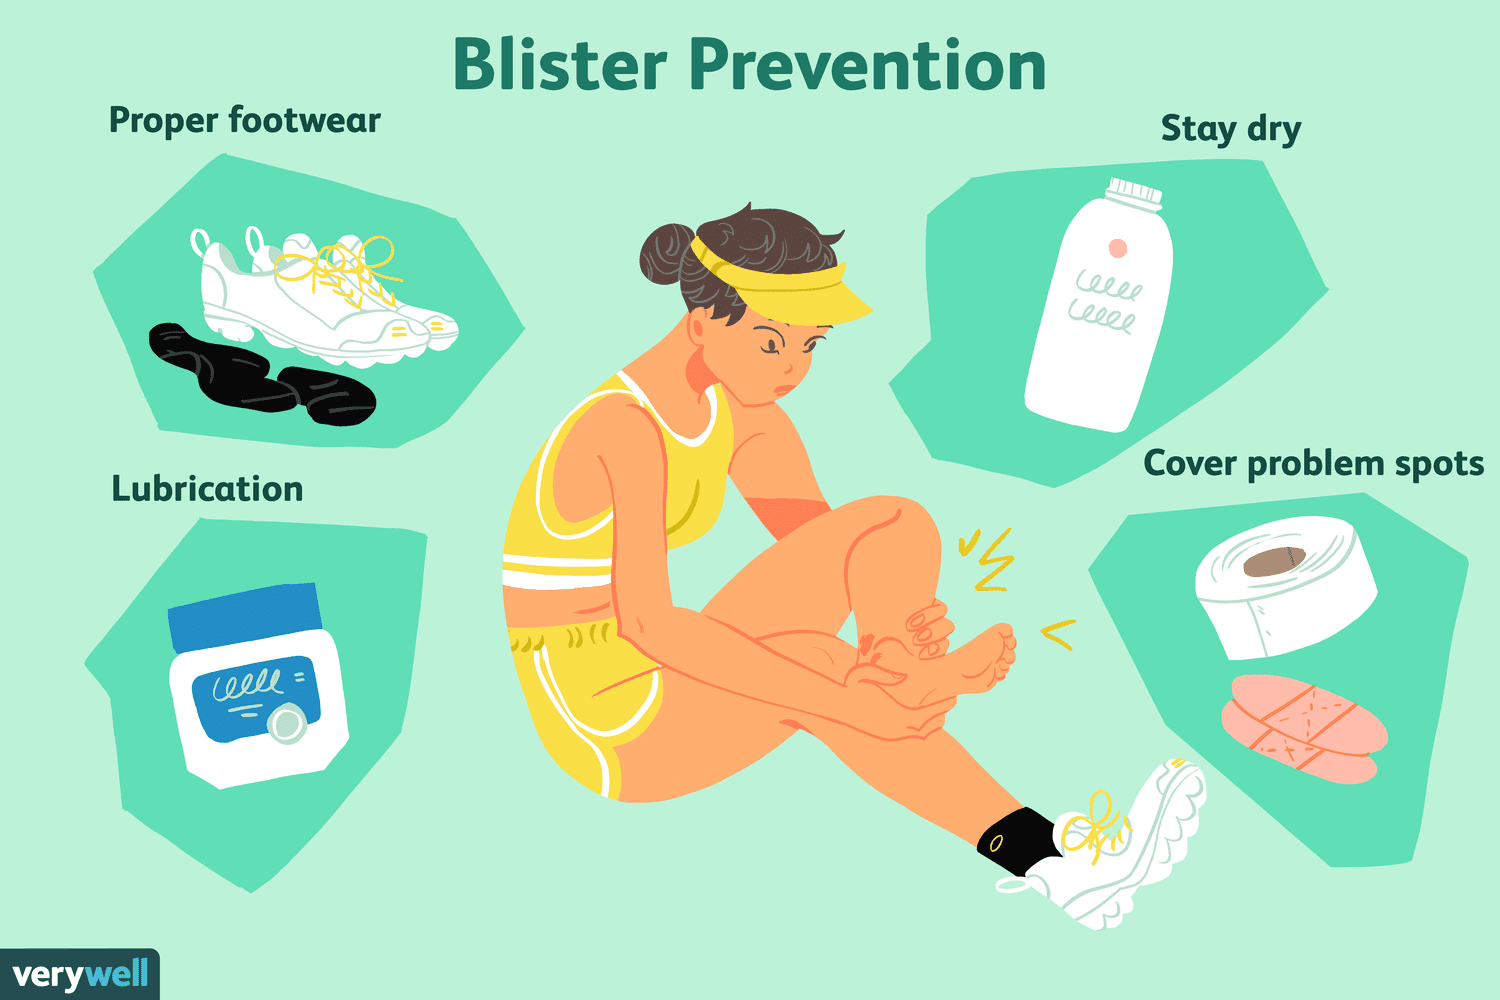 Blister prevention